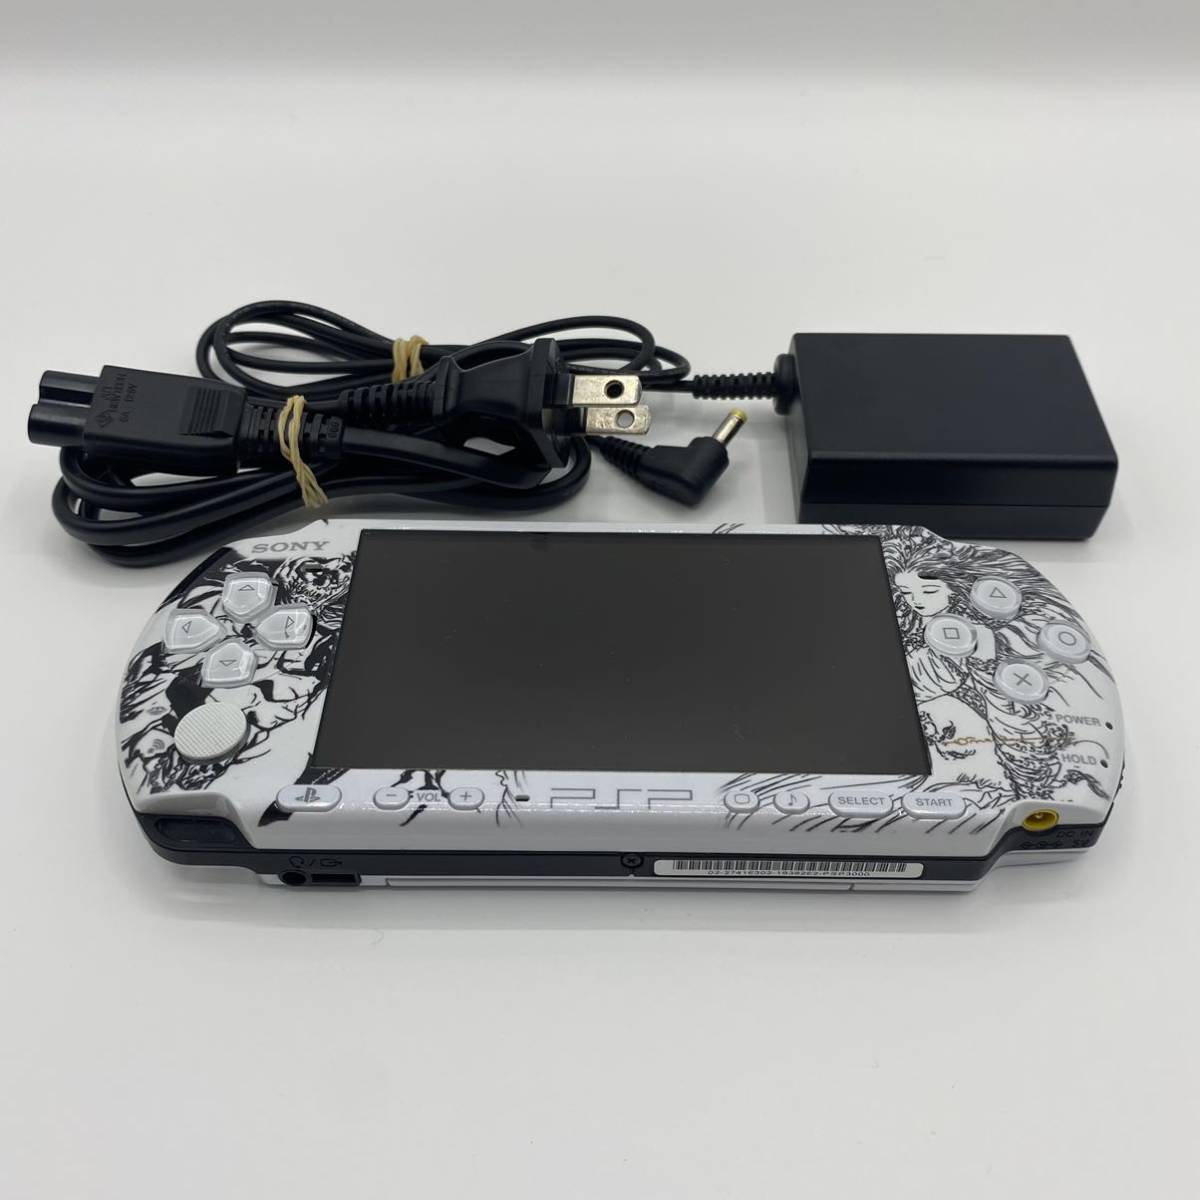 大量購入用 ★限定モデル★ PSP3000 DISSIDIA012 ＋SONY製アダプター 携帯用ゲーム本体